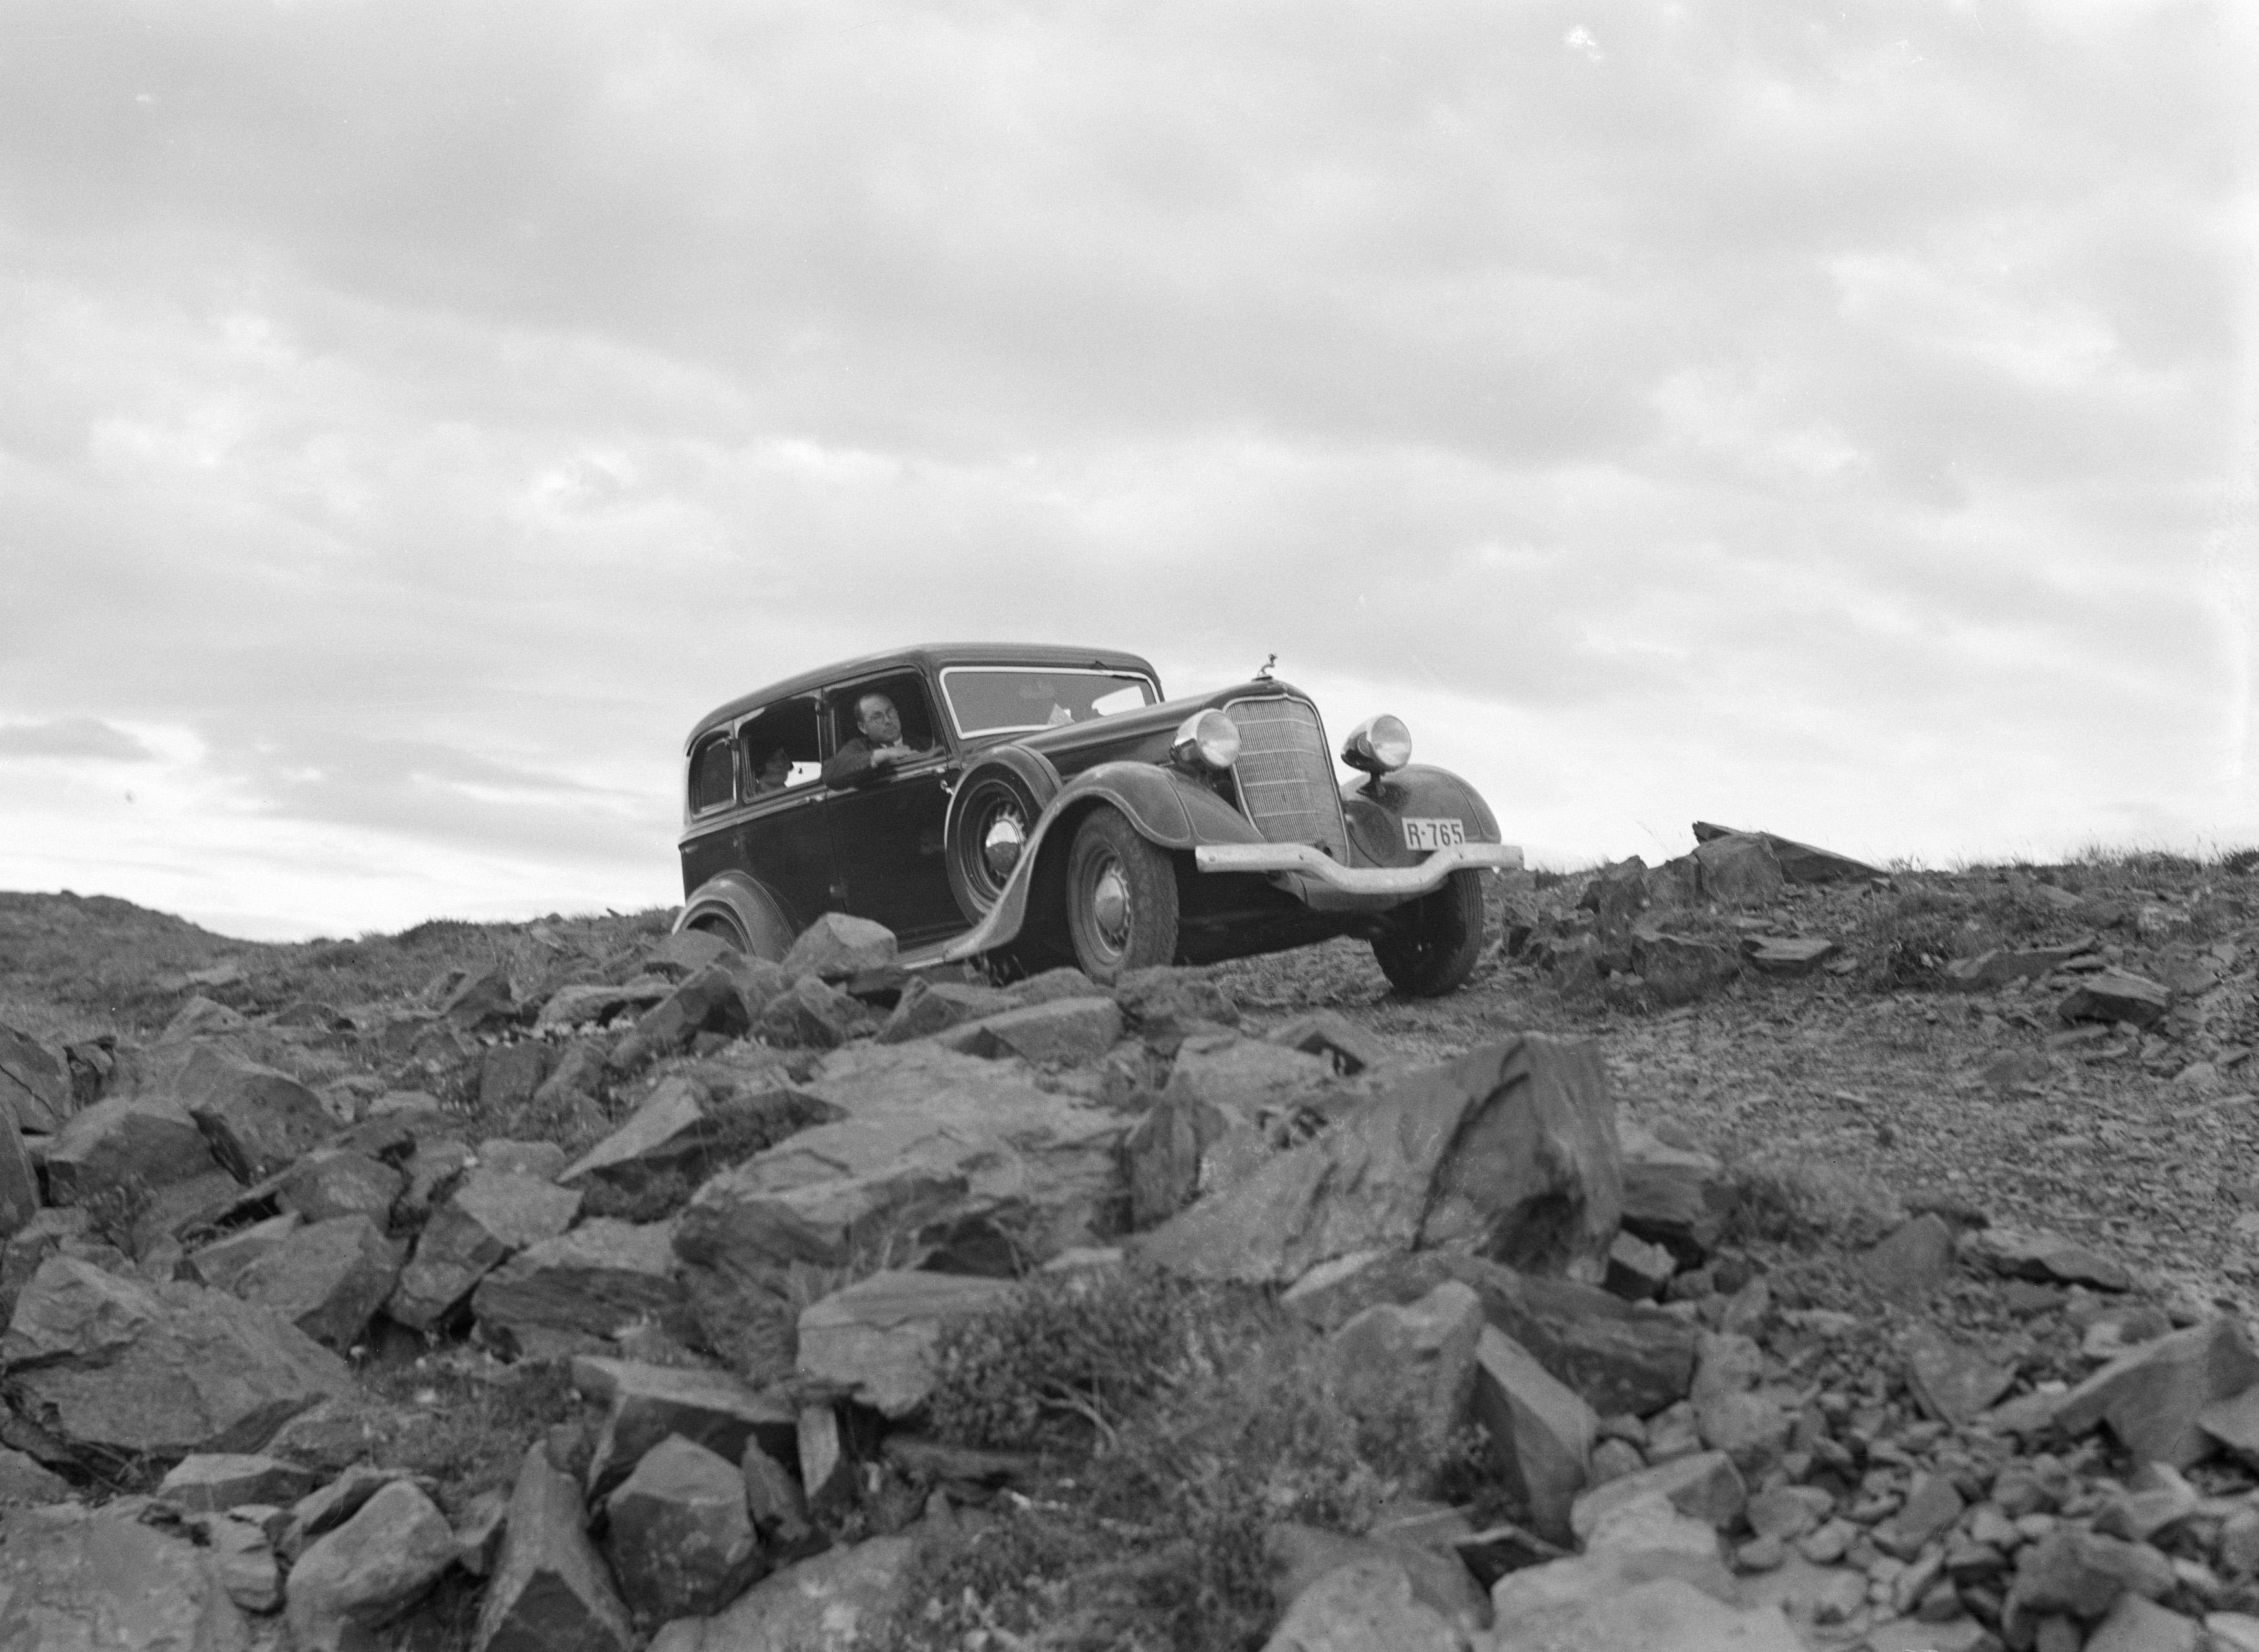 File:Auto op een smalle weg in een rotsachtig landschap gezien een lager geleg, Bestanddeelnr 190-0293.jpg - Wikimedia Commons